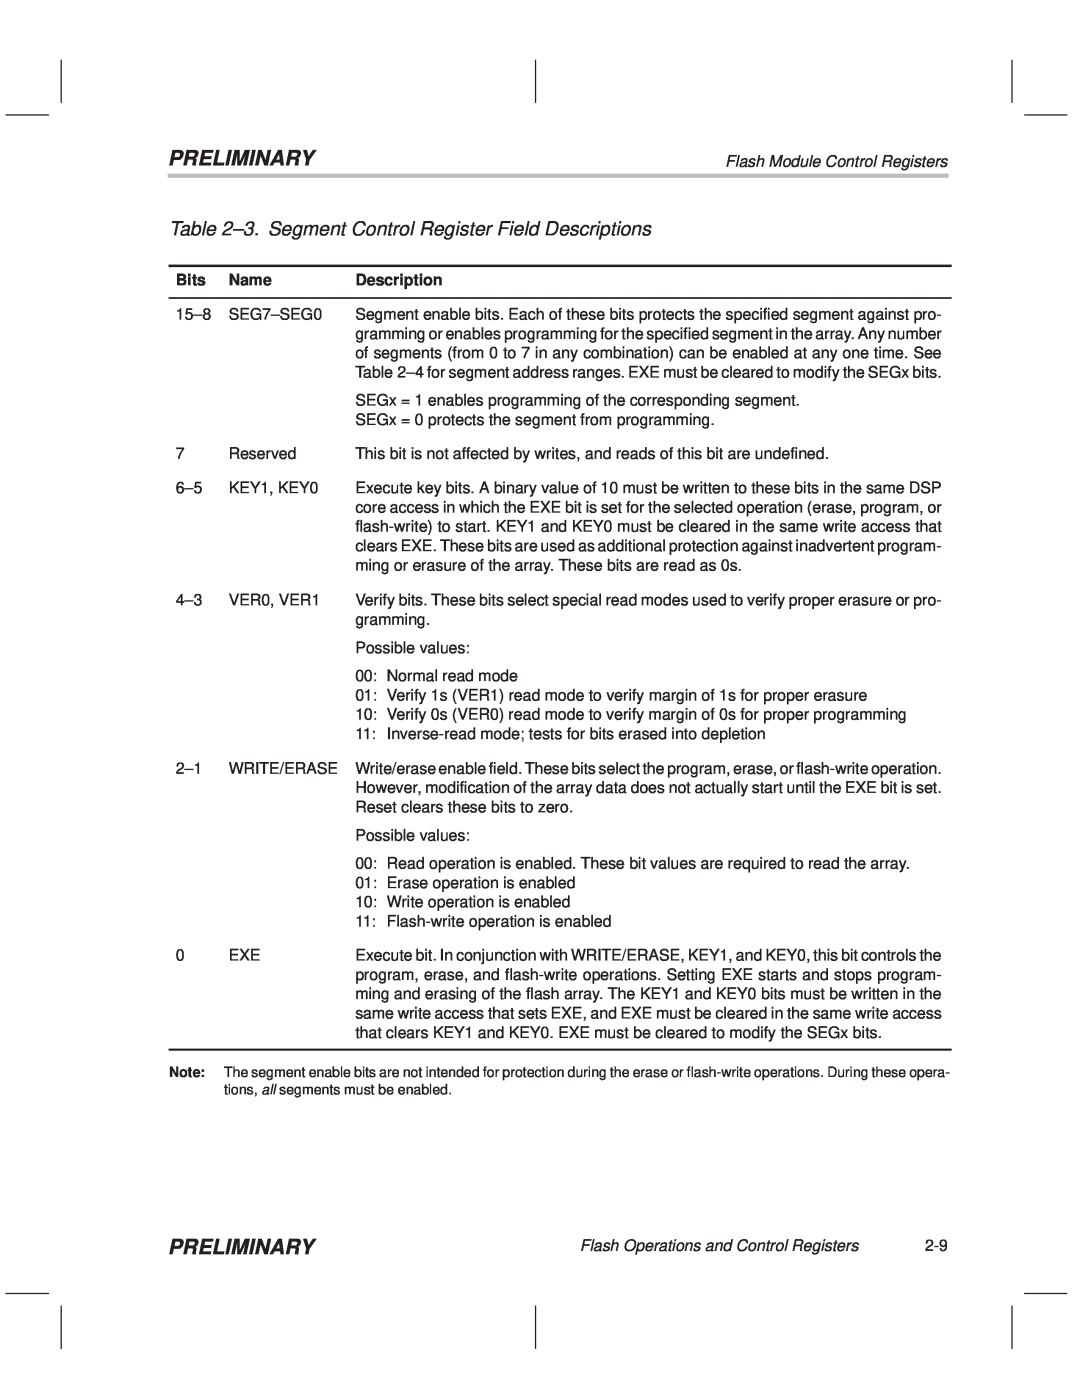 Texas Instruments TMS320F20x/F24x DSP manual ±3. Segment Control Register Field Descriptions, Preliminary 